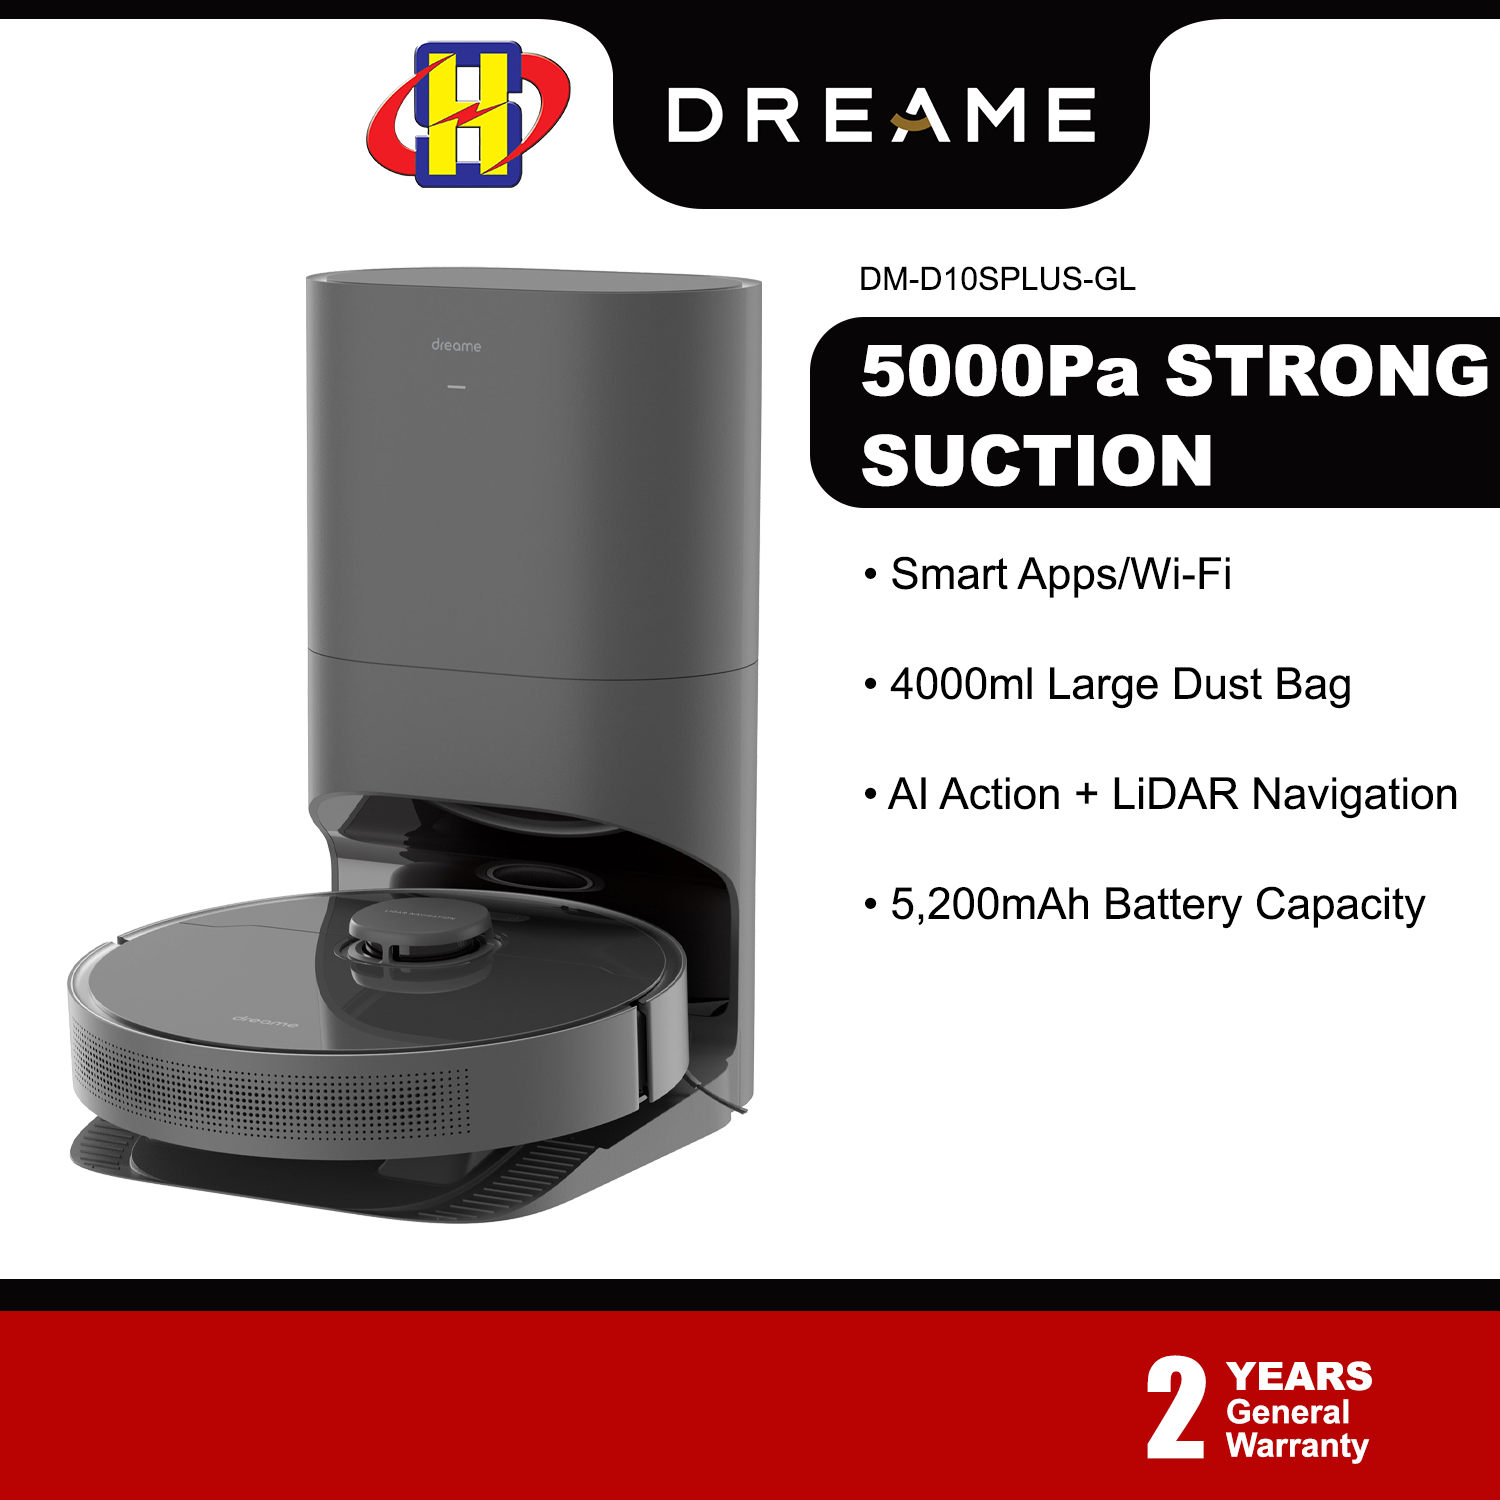 Dreame D10s Plus Robotic Vacuum Cleaner, Black